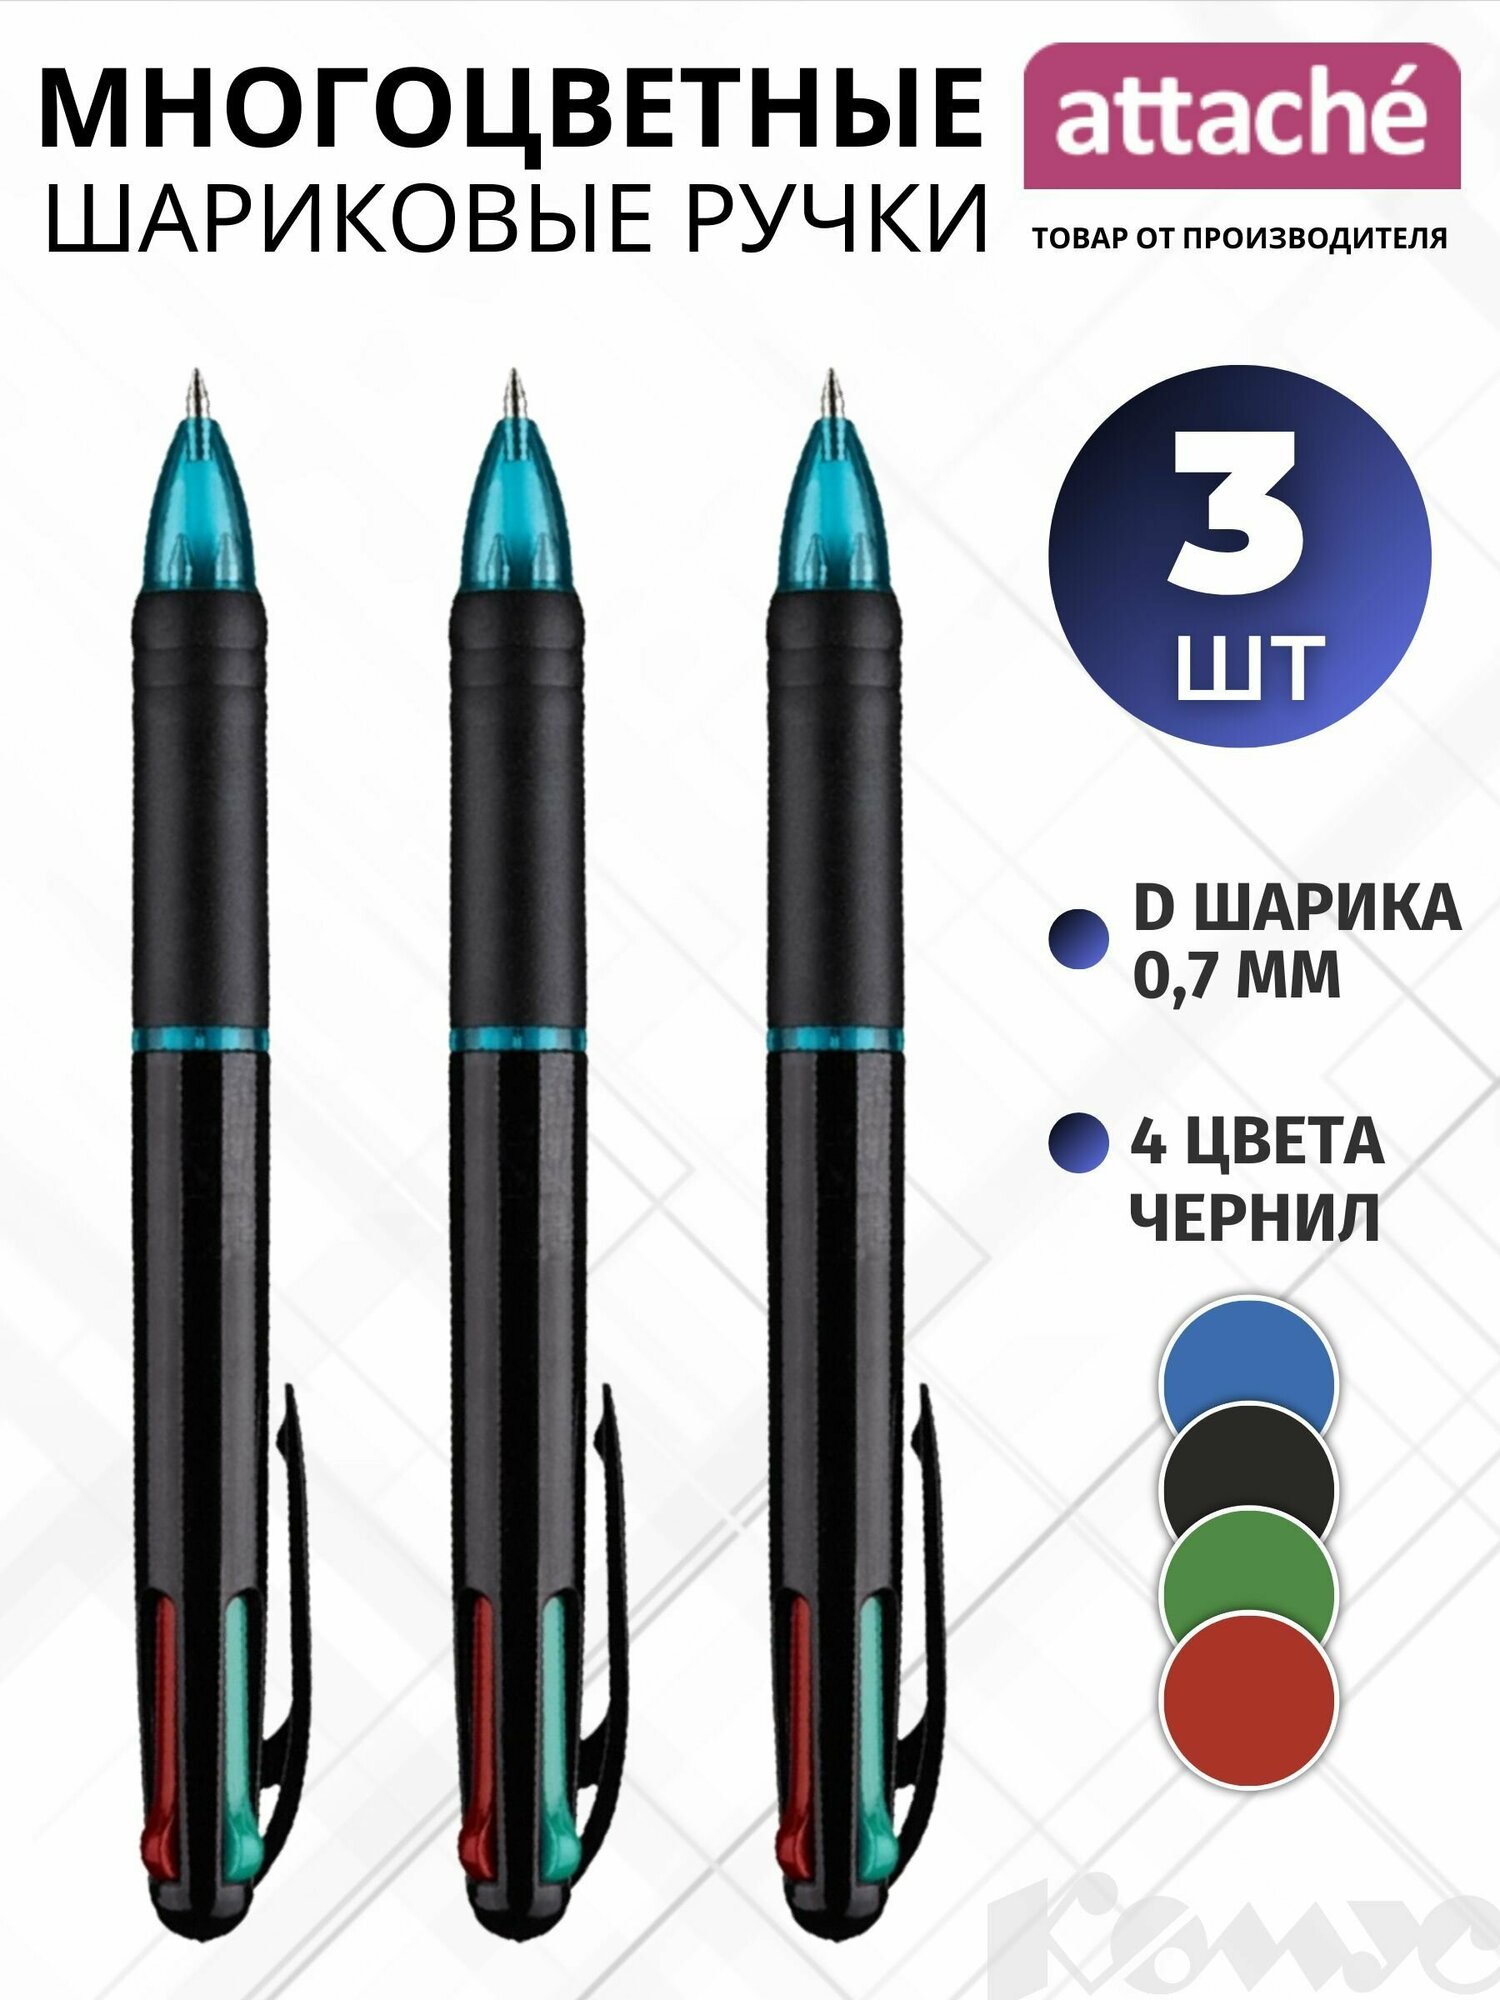 Многоцветная шариковая ручка Attache Luminate, 4 цвета, 0.5 мм, набор 3 штуки